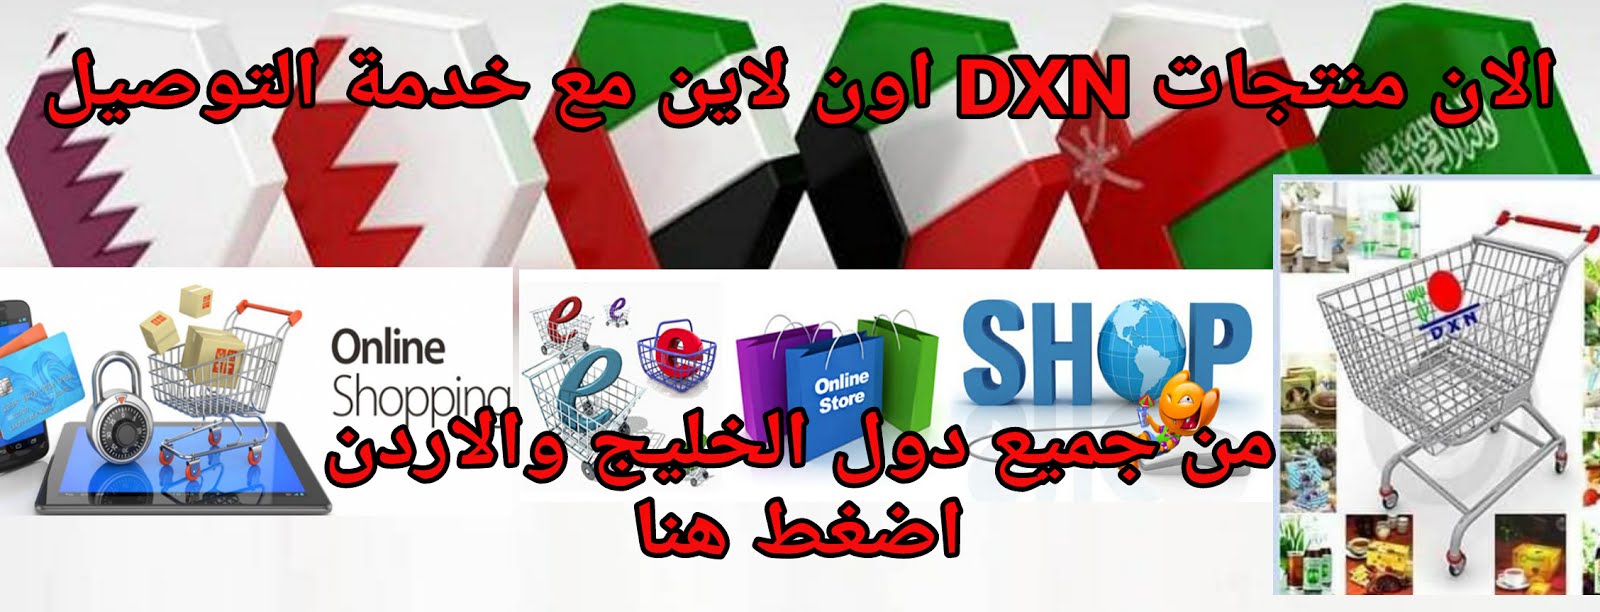 اضغط هنا لدخول سوق dxn الرسمي للشركة وشراء المنتجات مع خدمة التوصيل الي السعودية الكويت الامارات عم